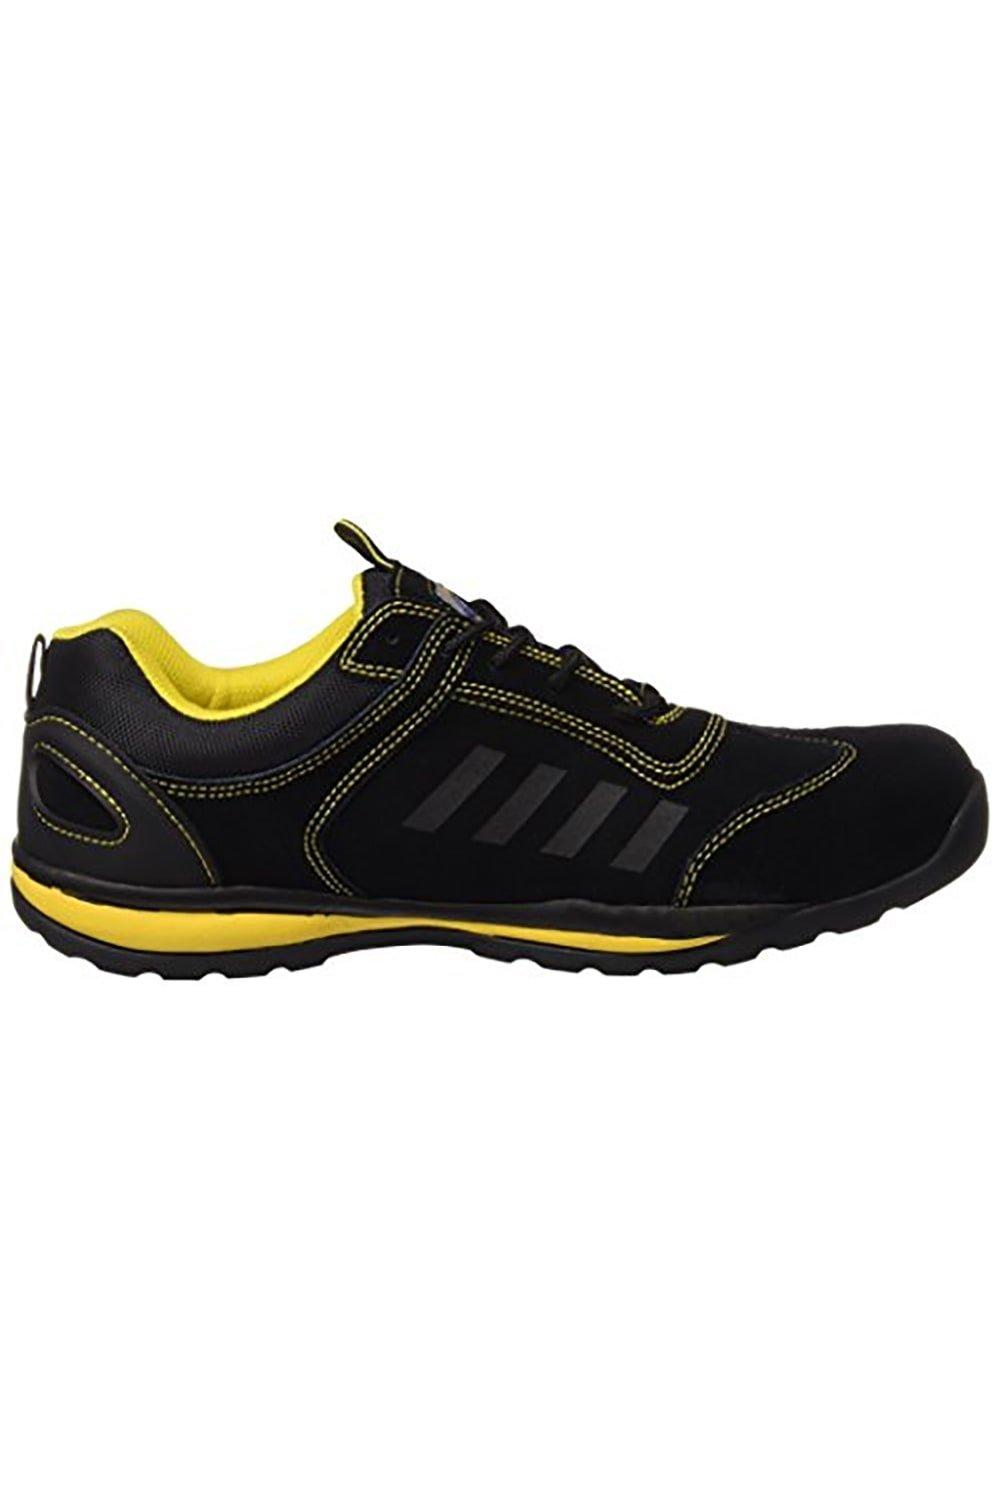 Steelite Lusun Safety Trainer Footwear